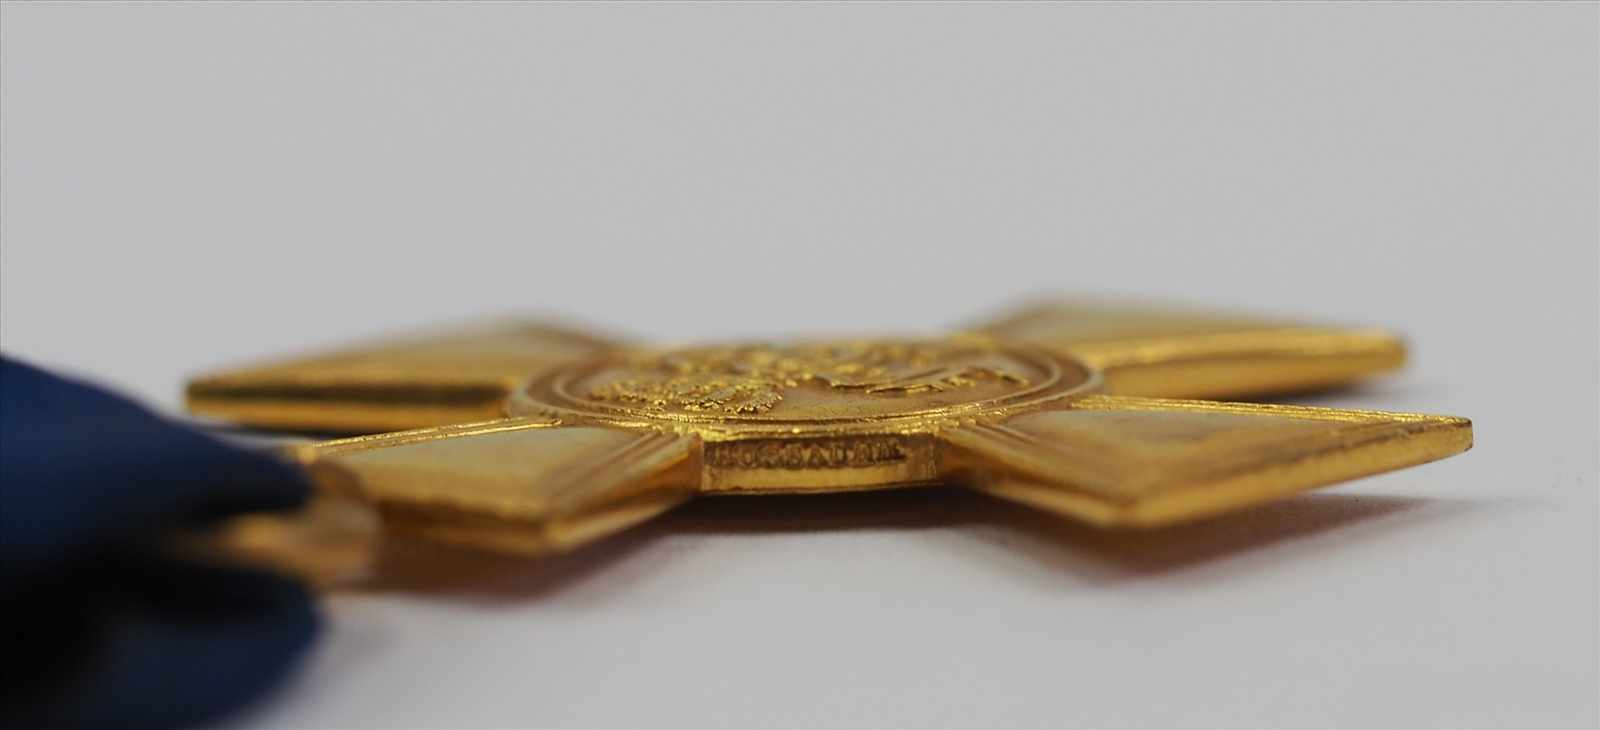 Preussen: Offiziers Dienstauszeichnung, für 25 Jahre - HOSSAUER.Bronze vergoldet, polierte Kanten, - Image 2 of 4